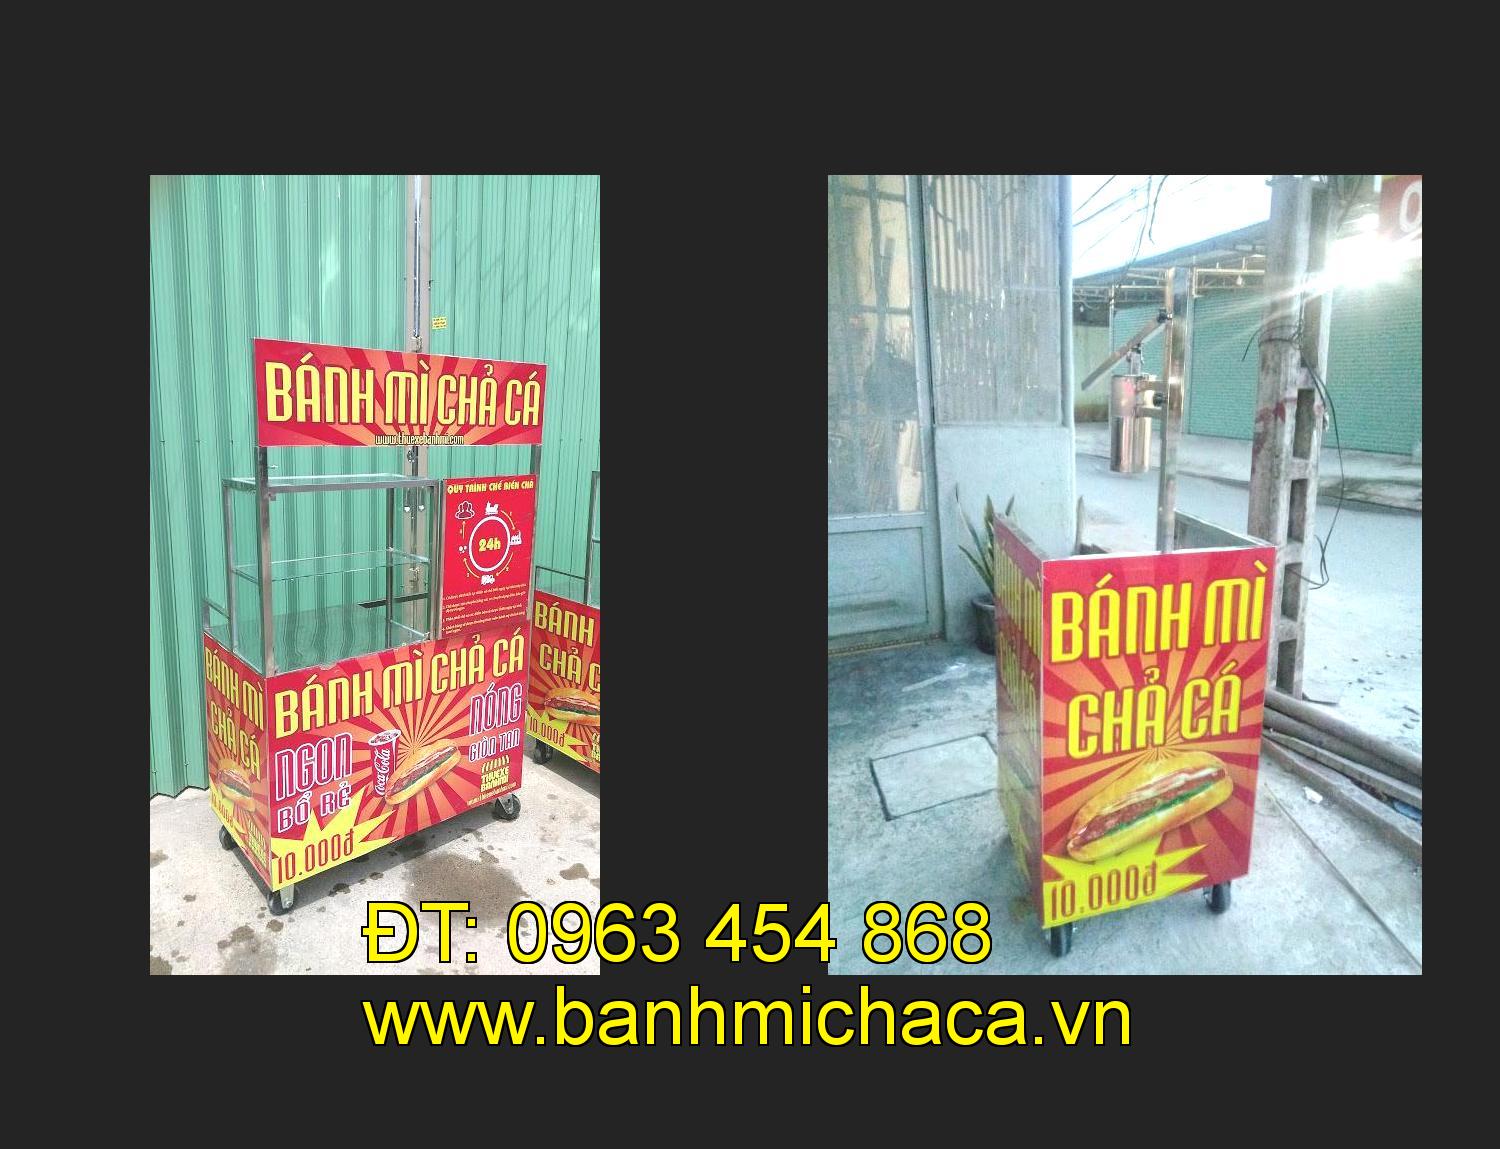 Bán xe bánh mì chả cá tại tỉnh Bắc Giang